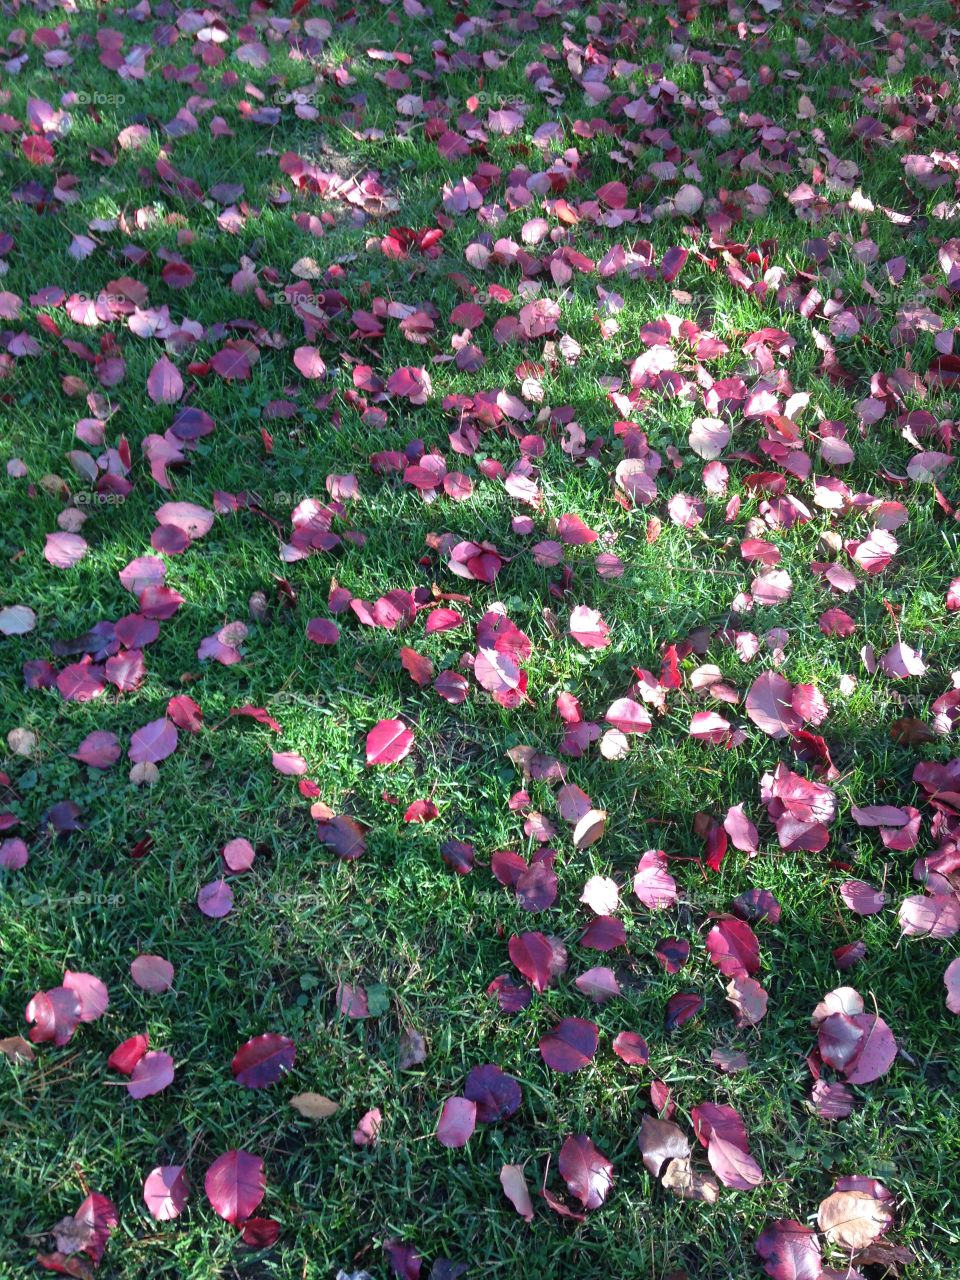 Petals fallen on grass